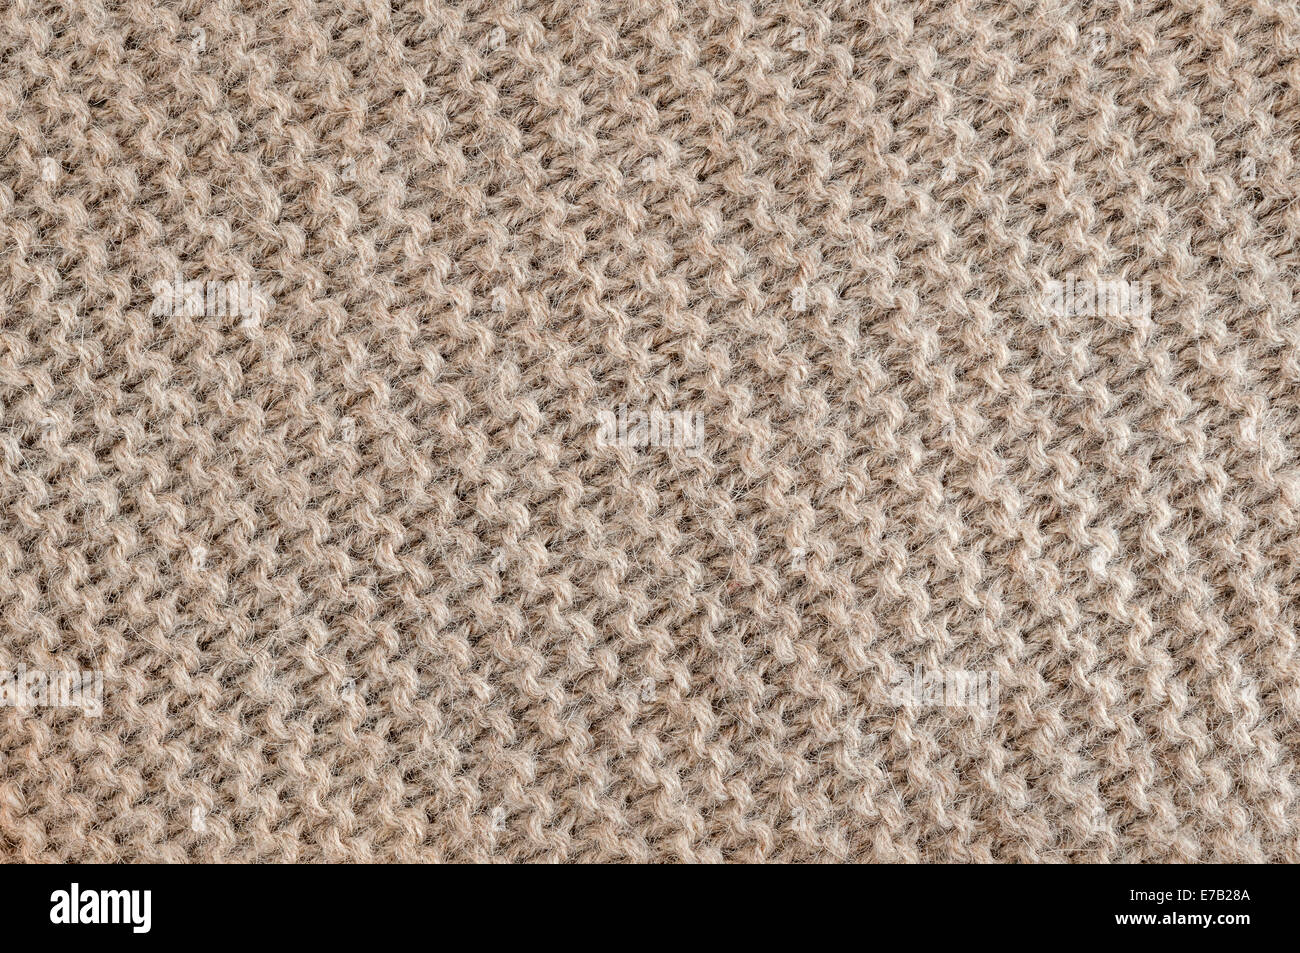 Gestrickte Textur der ungefärbten braune Alpakawolle Gestrick mit diagonalen Strumpfband Stichbild als Hintergrund Stockfoto